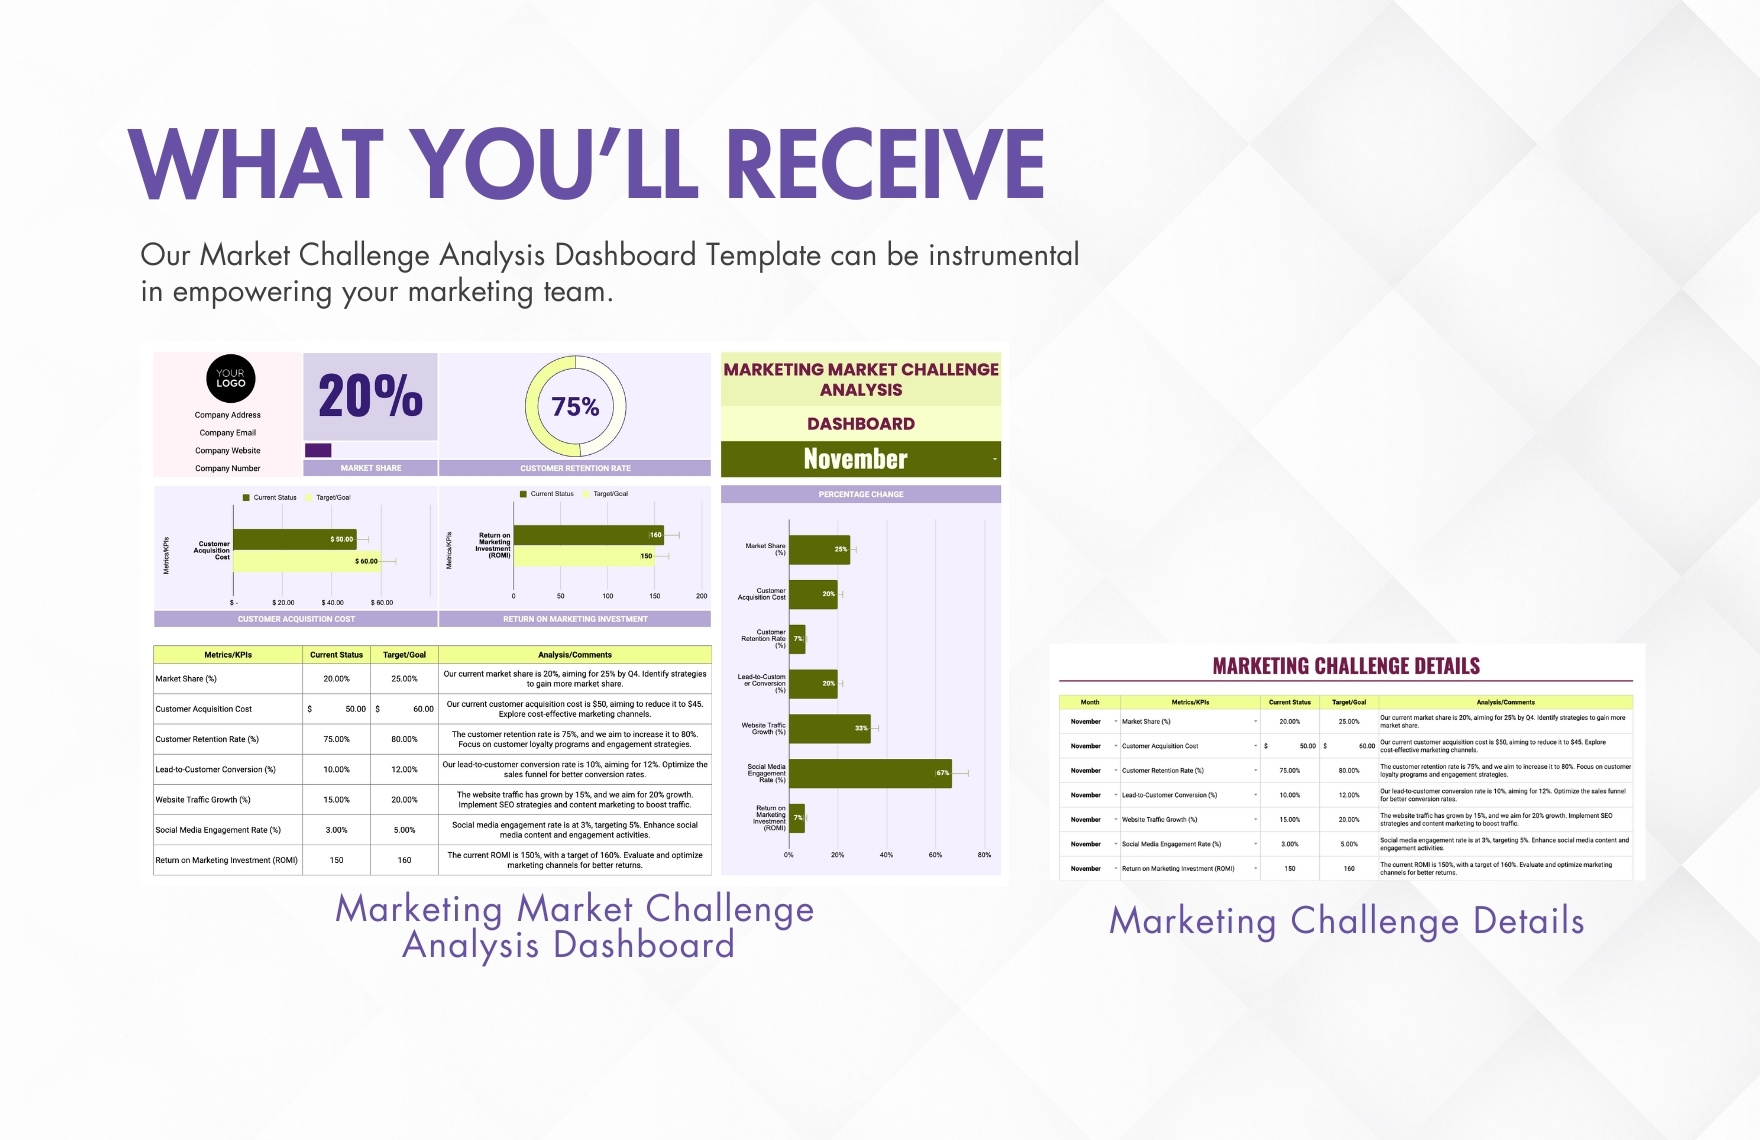 Marketing Market Challenge Analysis Dashboard Template